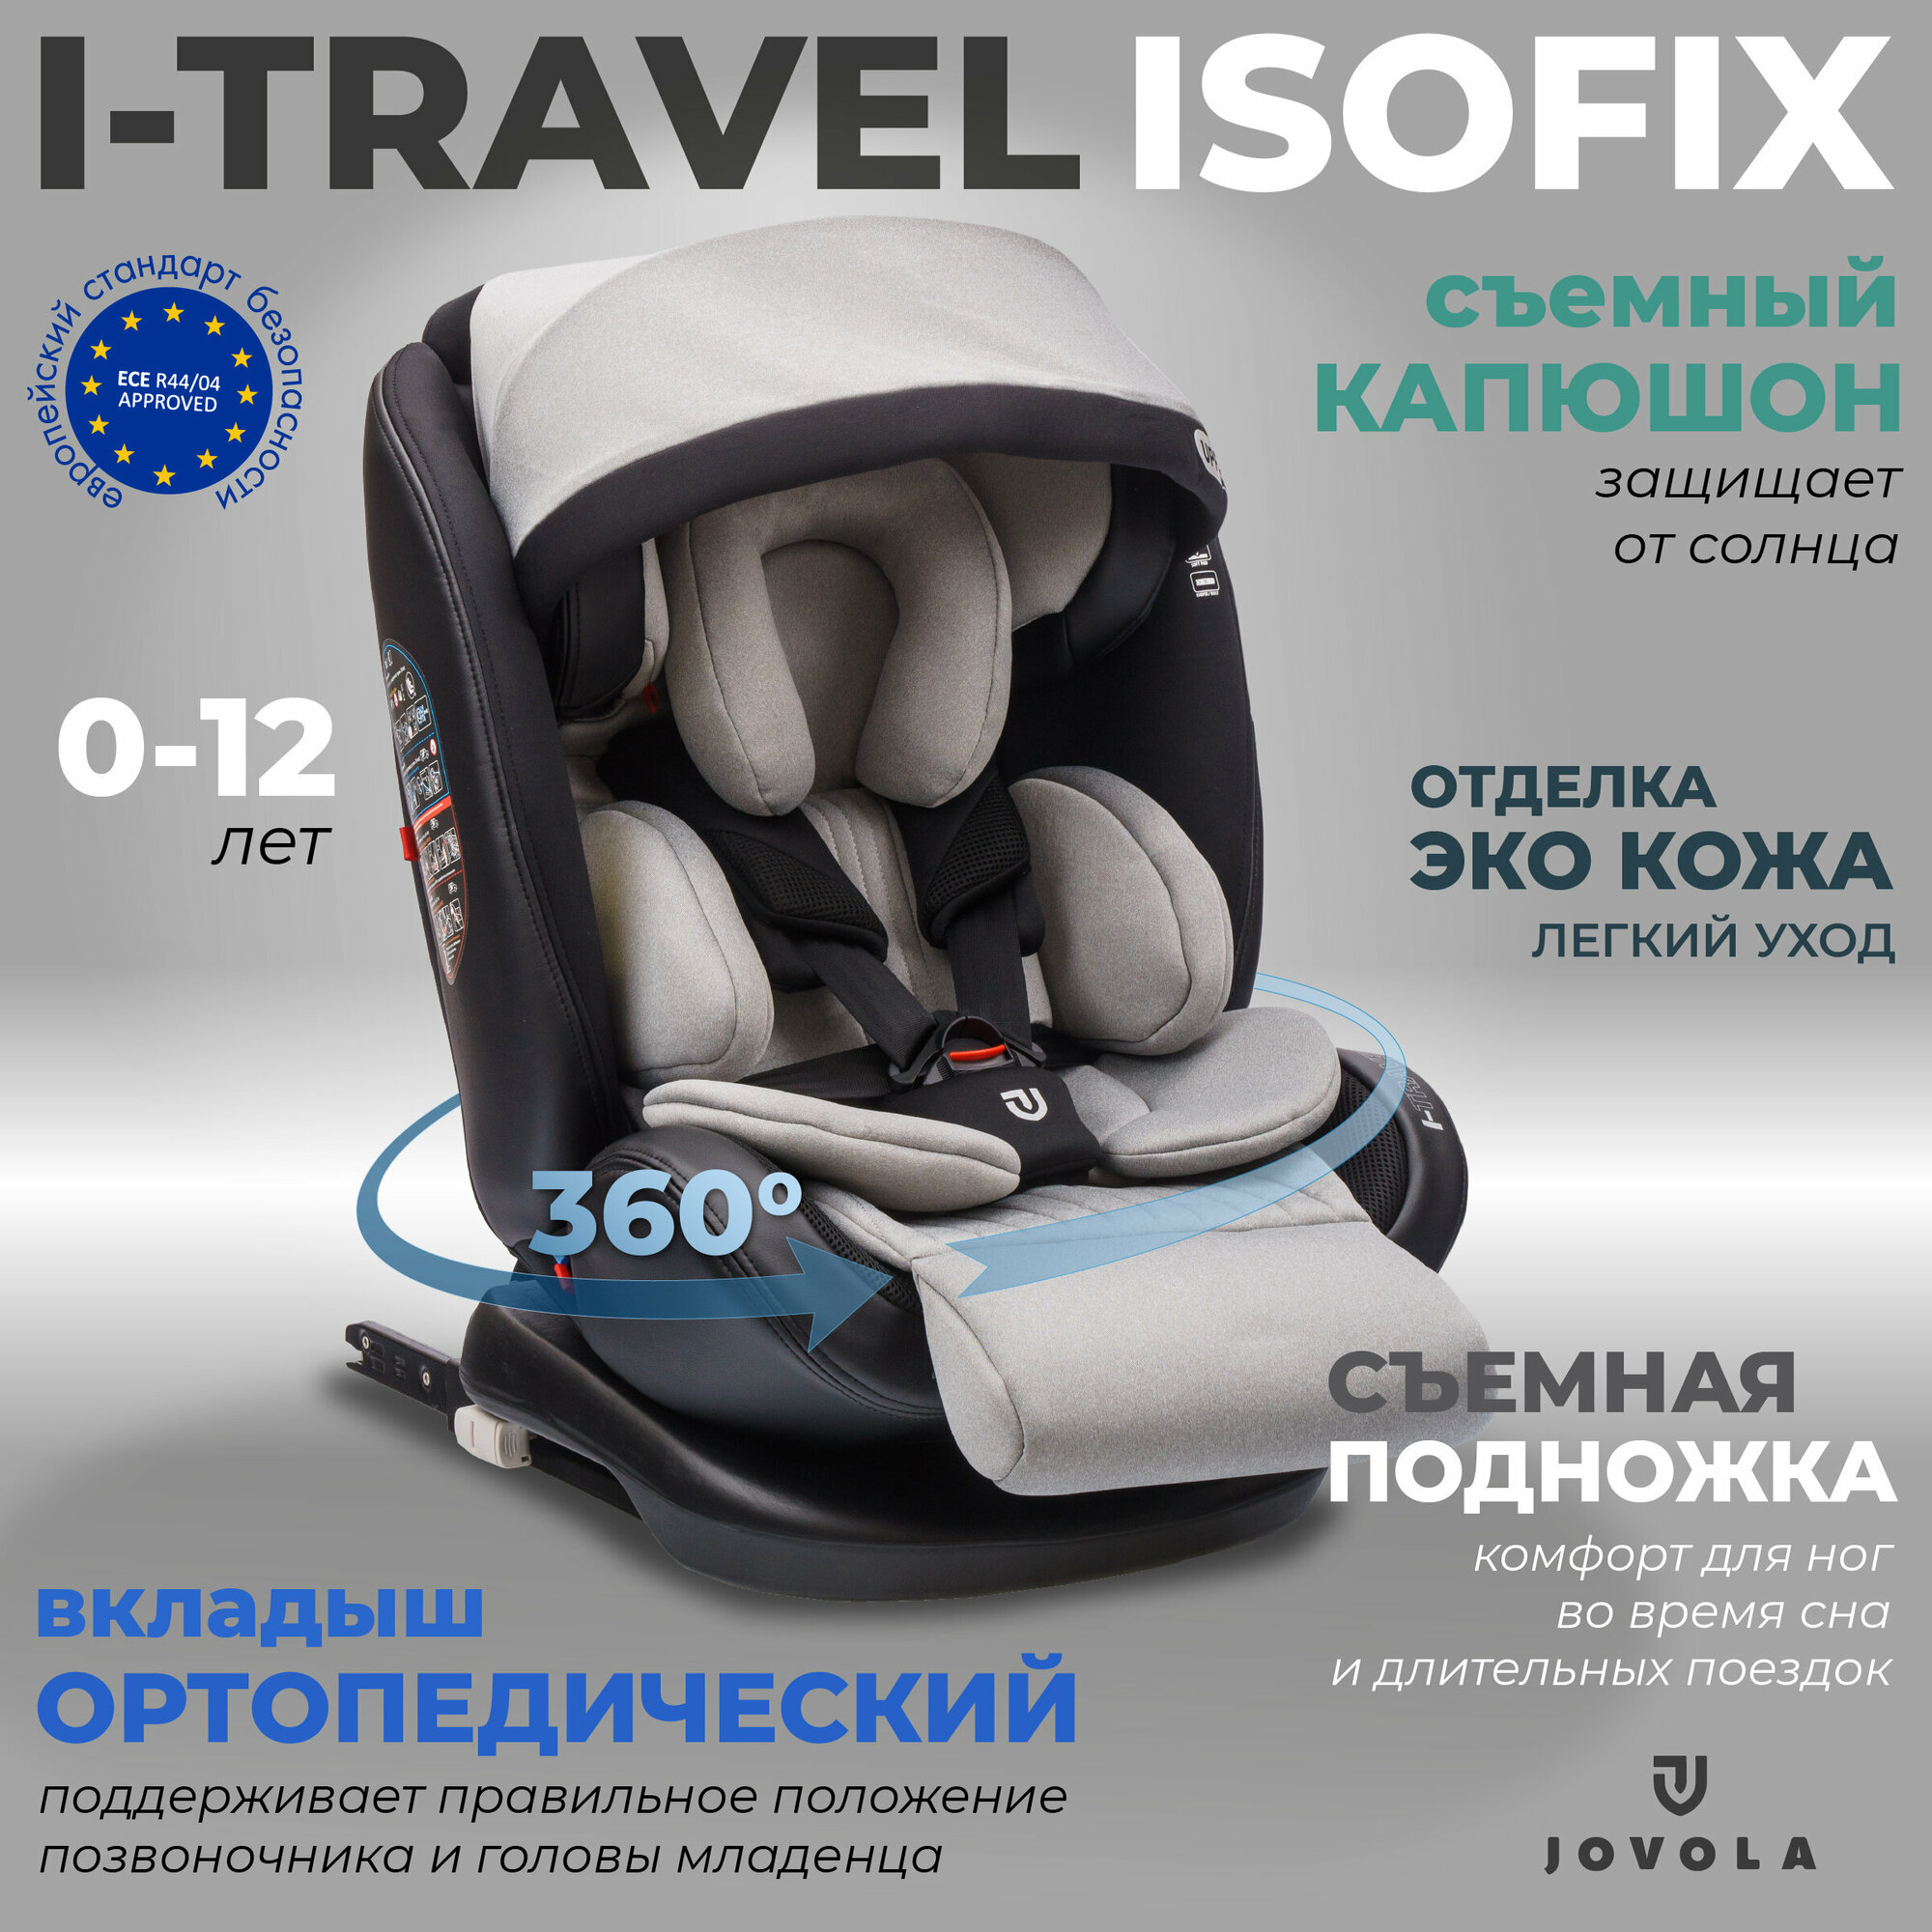 Автокресло Jovola I-Travel Isofix растущее 0-36 кг гр. 0123 черный